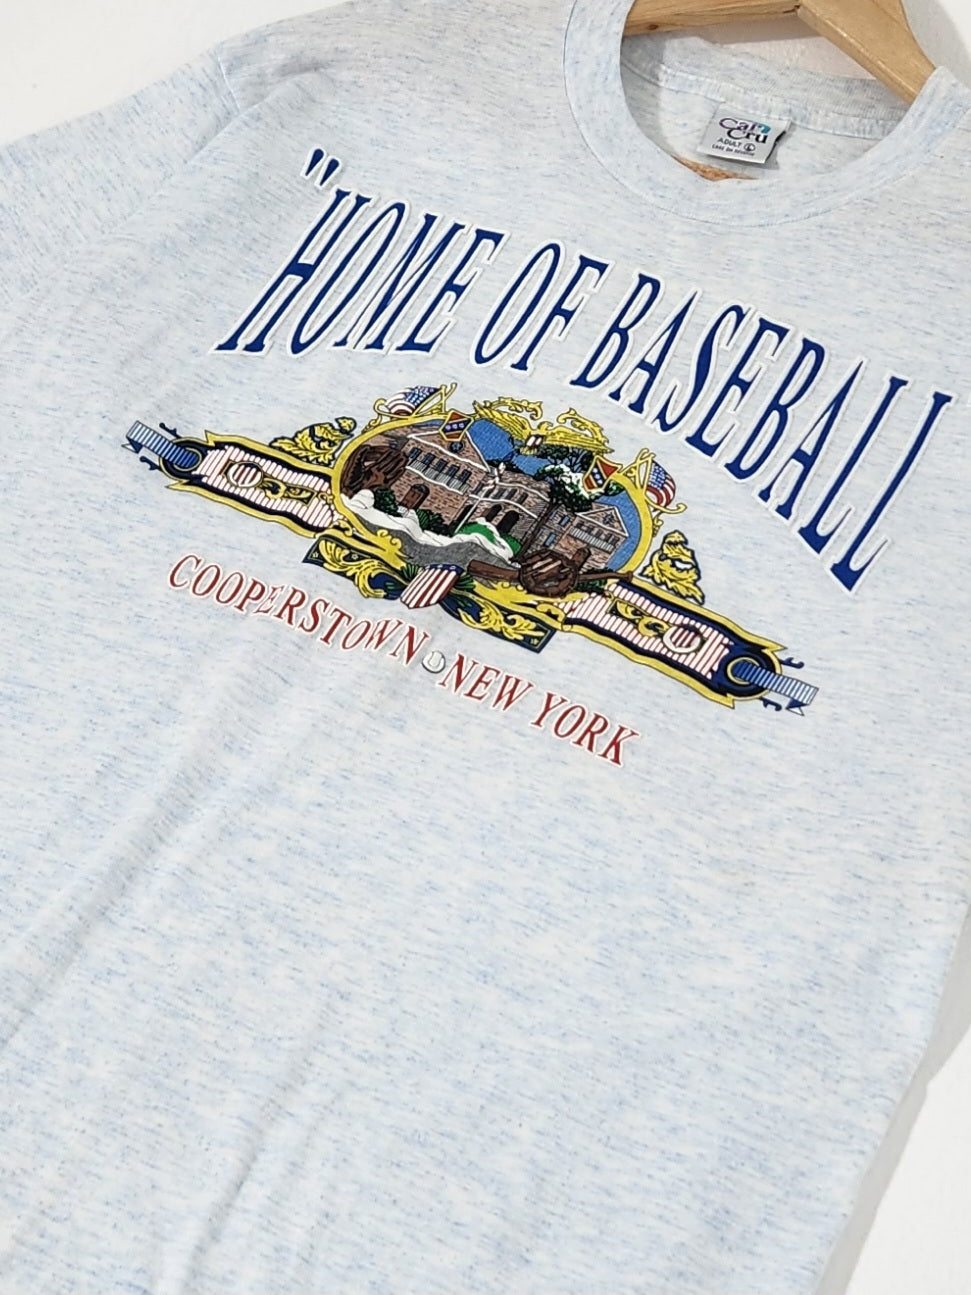 STARTER, Shirts, Vintage9snew York Yankees Starter Baseball Jersey Sz  Large B0